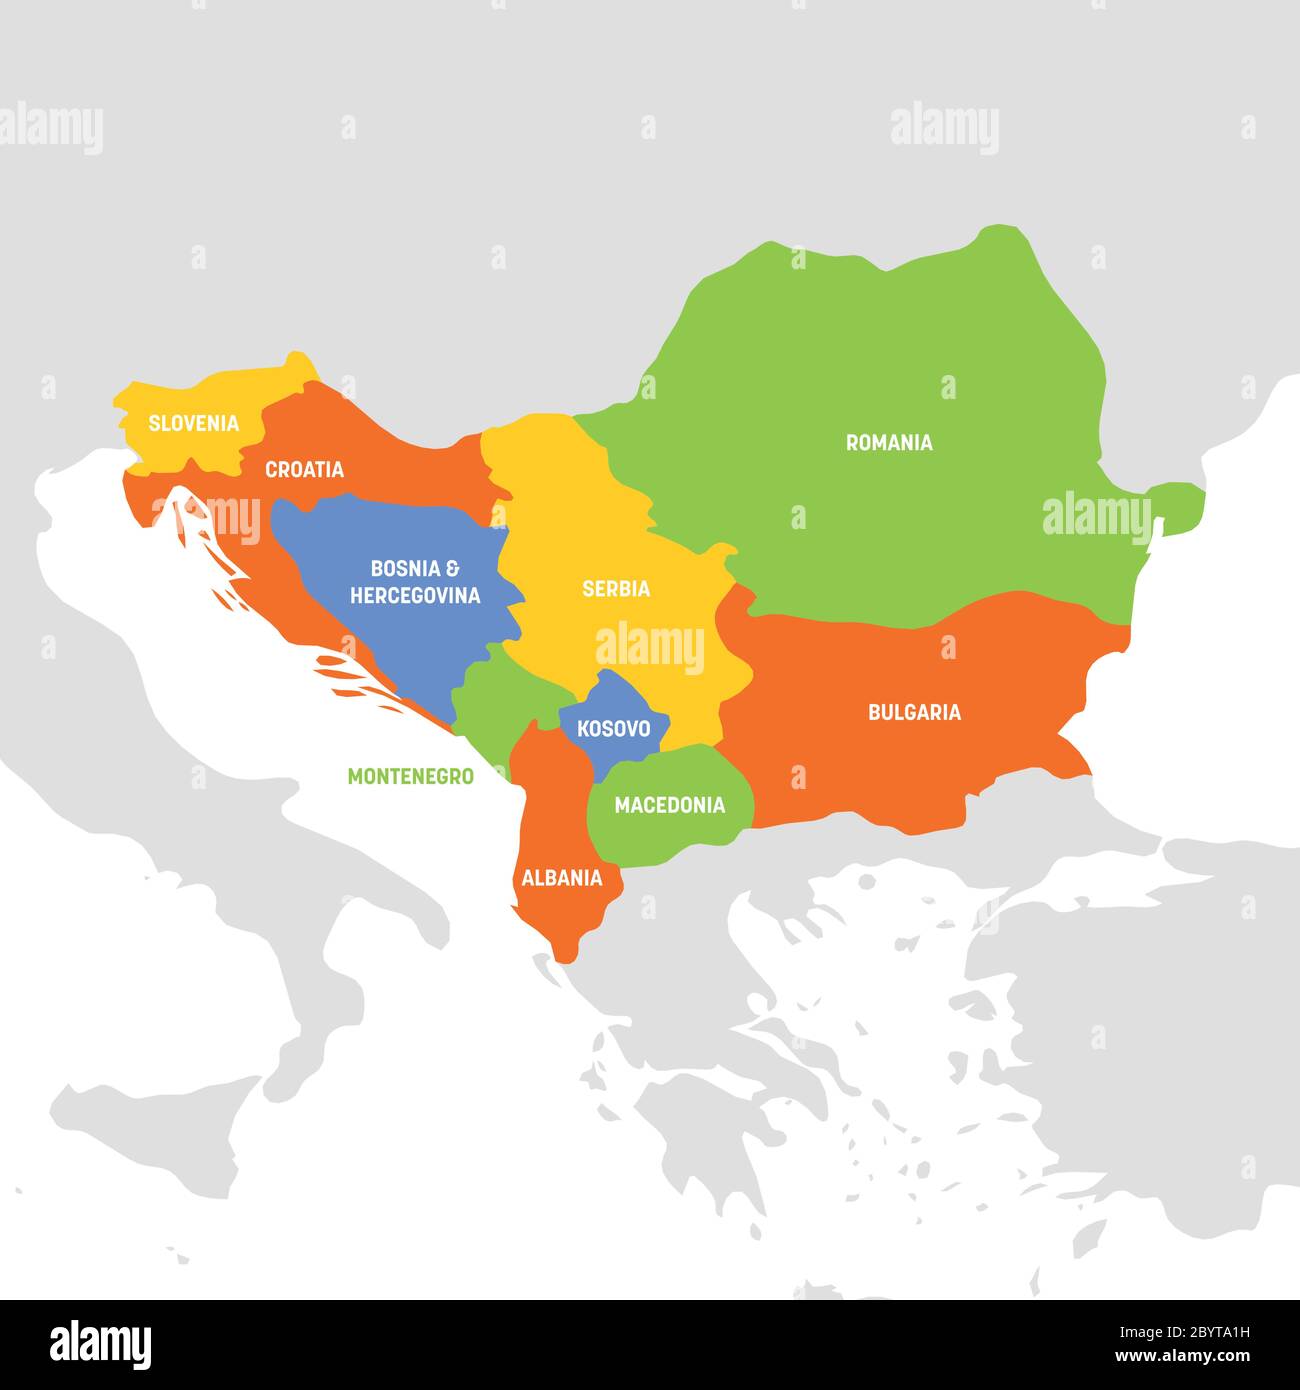 Région Europe du Sud-est. Carte des pays de la péninsule des Balkans.  Illustration vectorielle Image Vectorielle Stock - Alamy